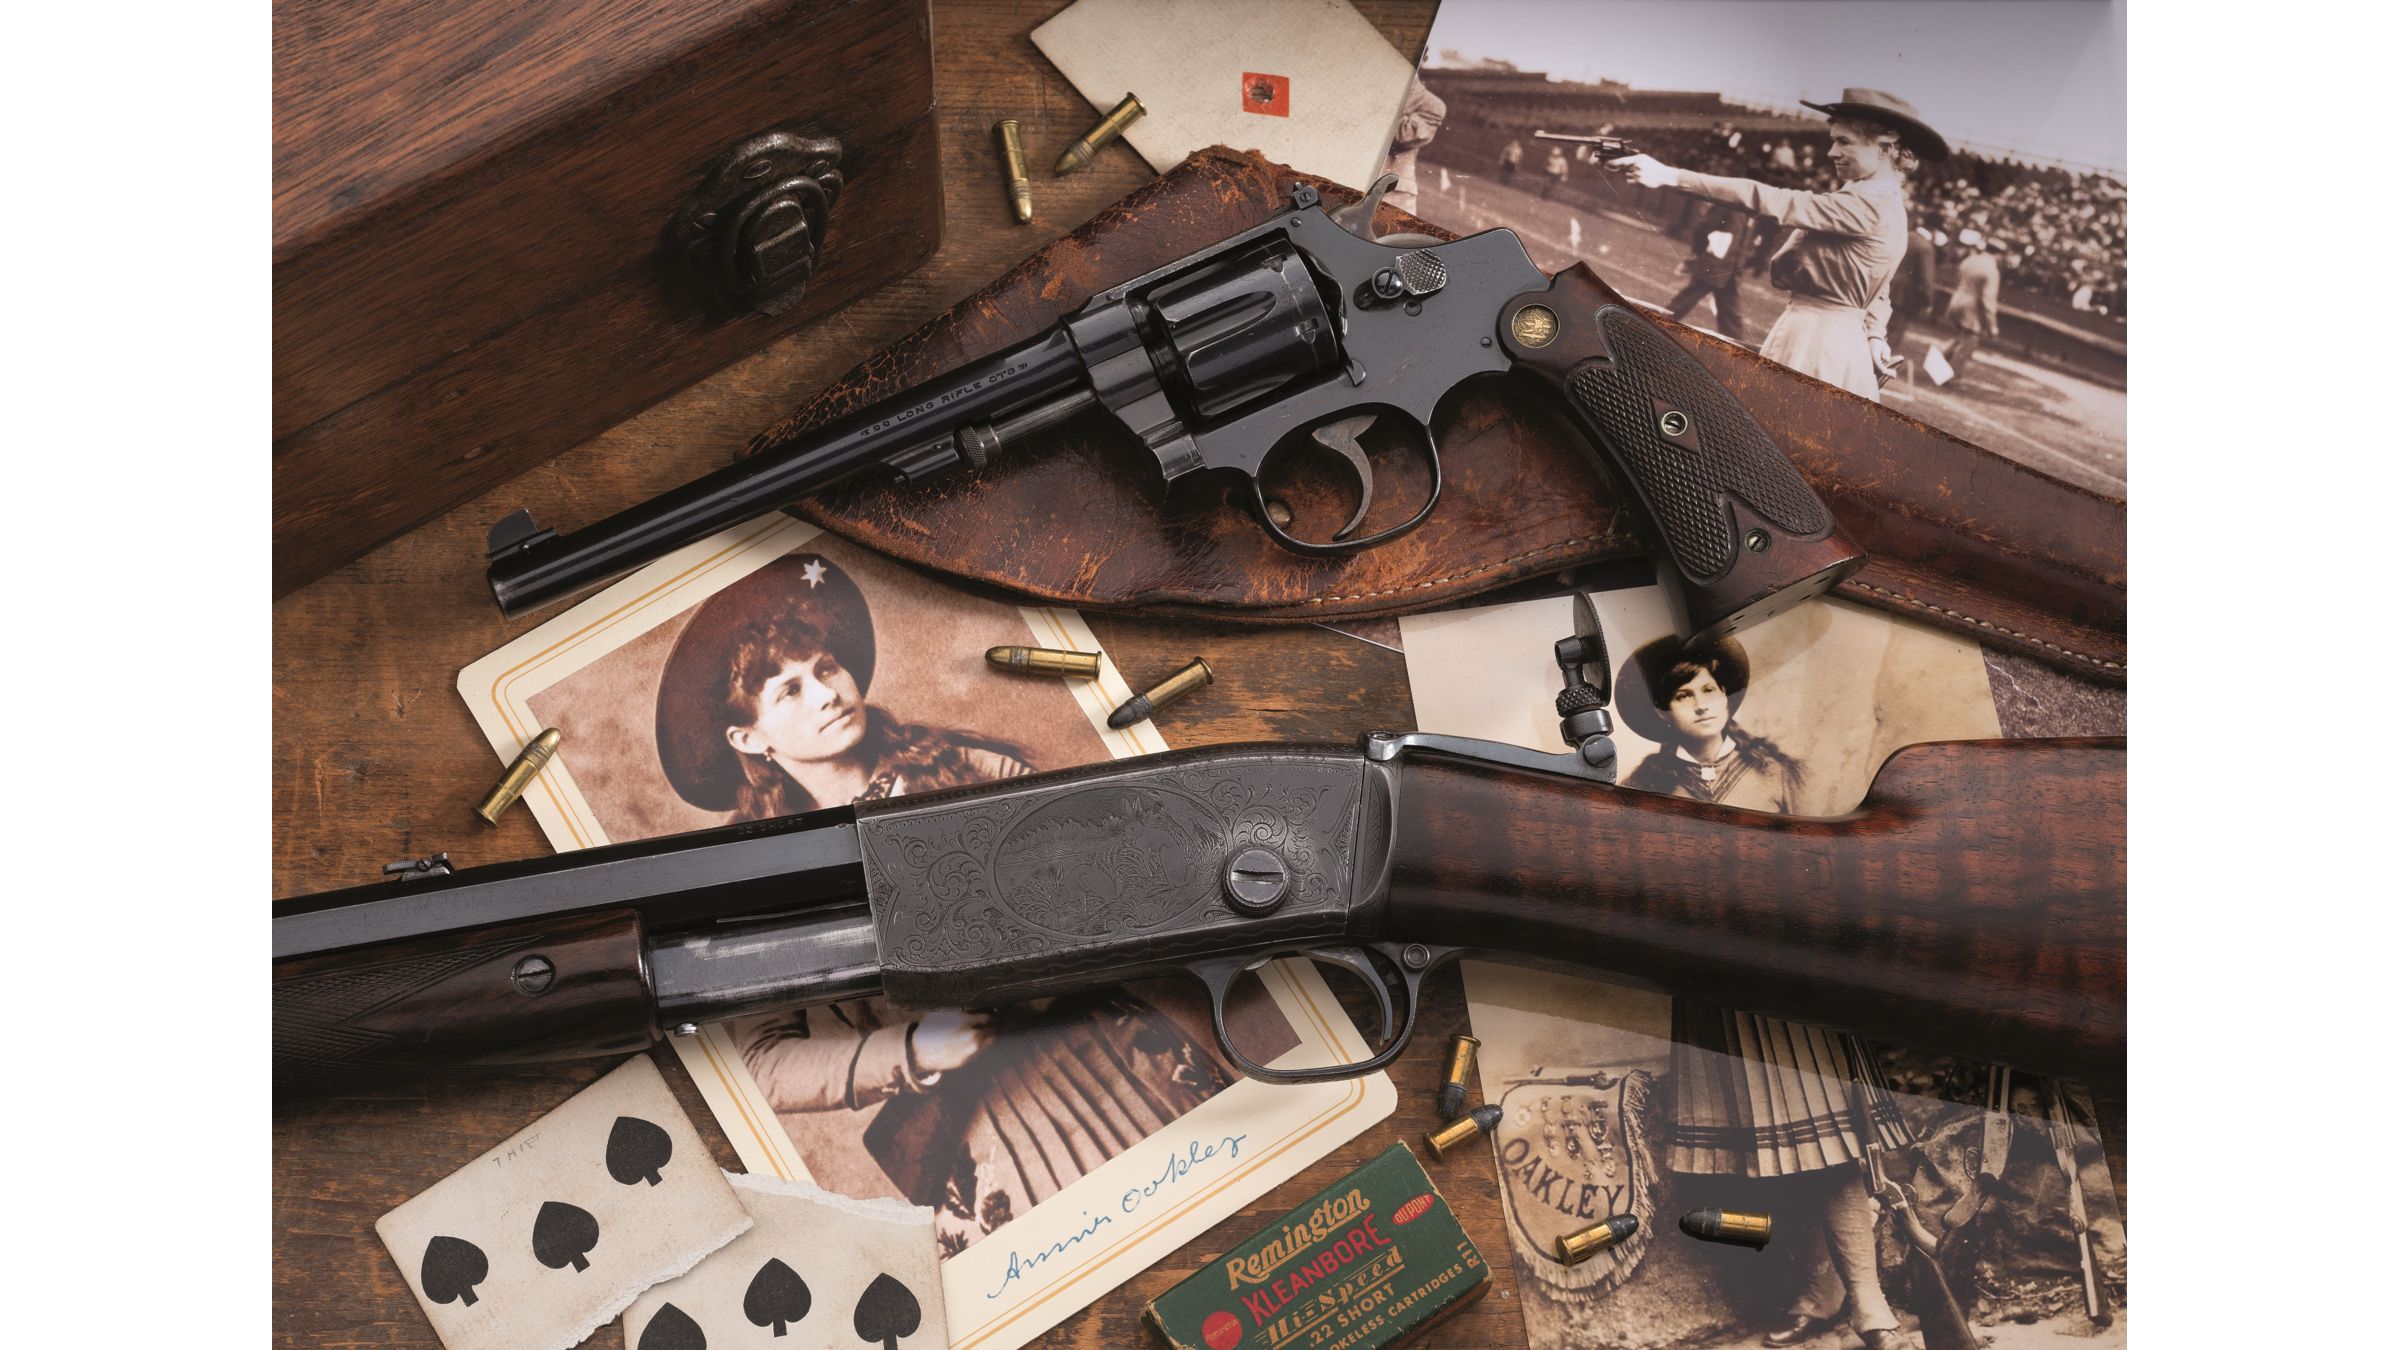 remington model 12 serial number 698284